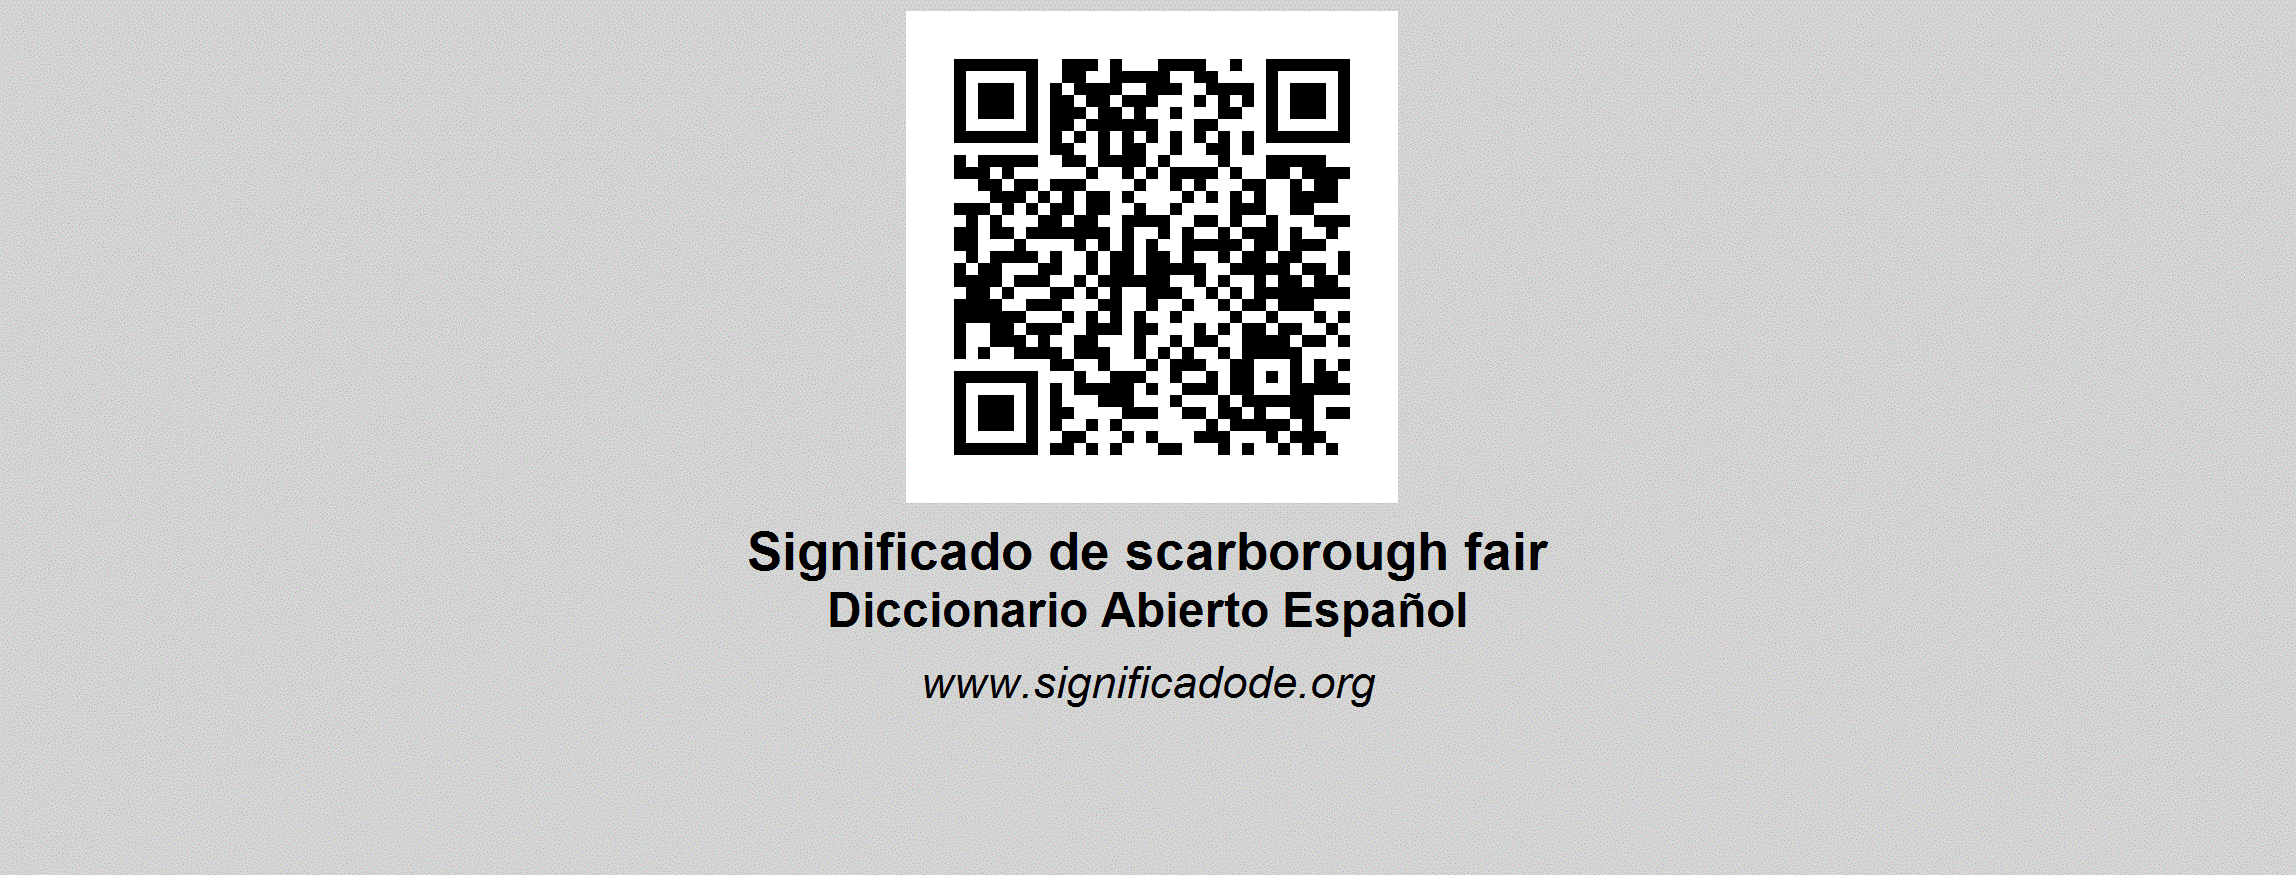 SCARBOROUGH FAIR - Diccionario Abierto de Español